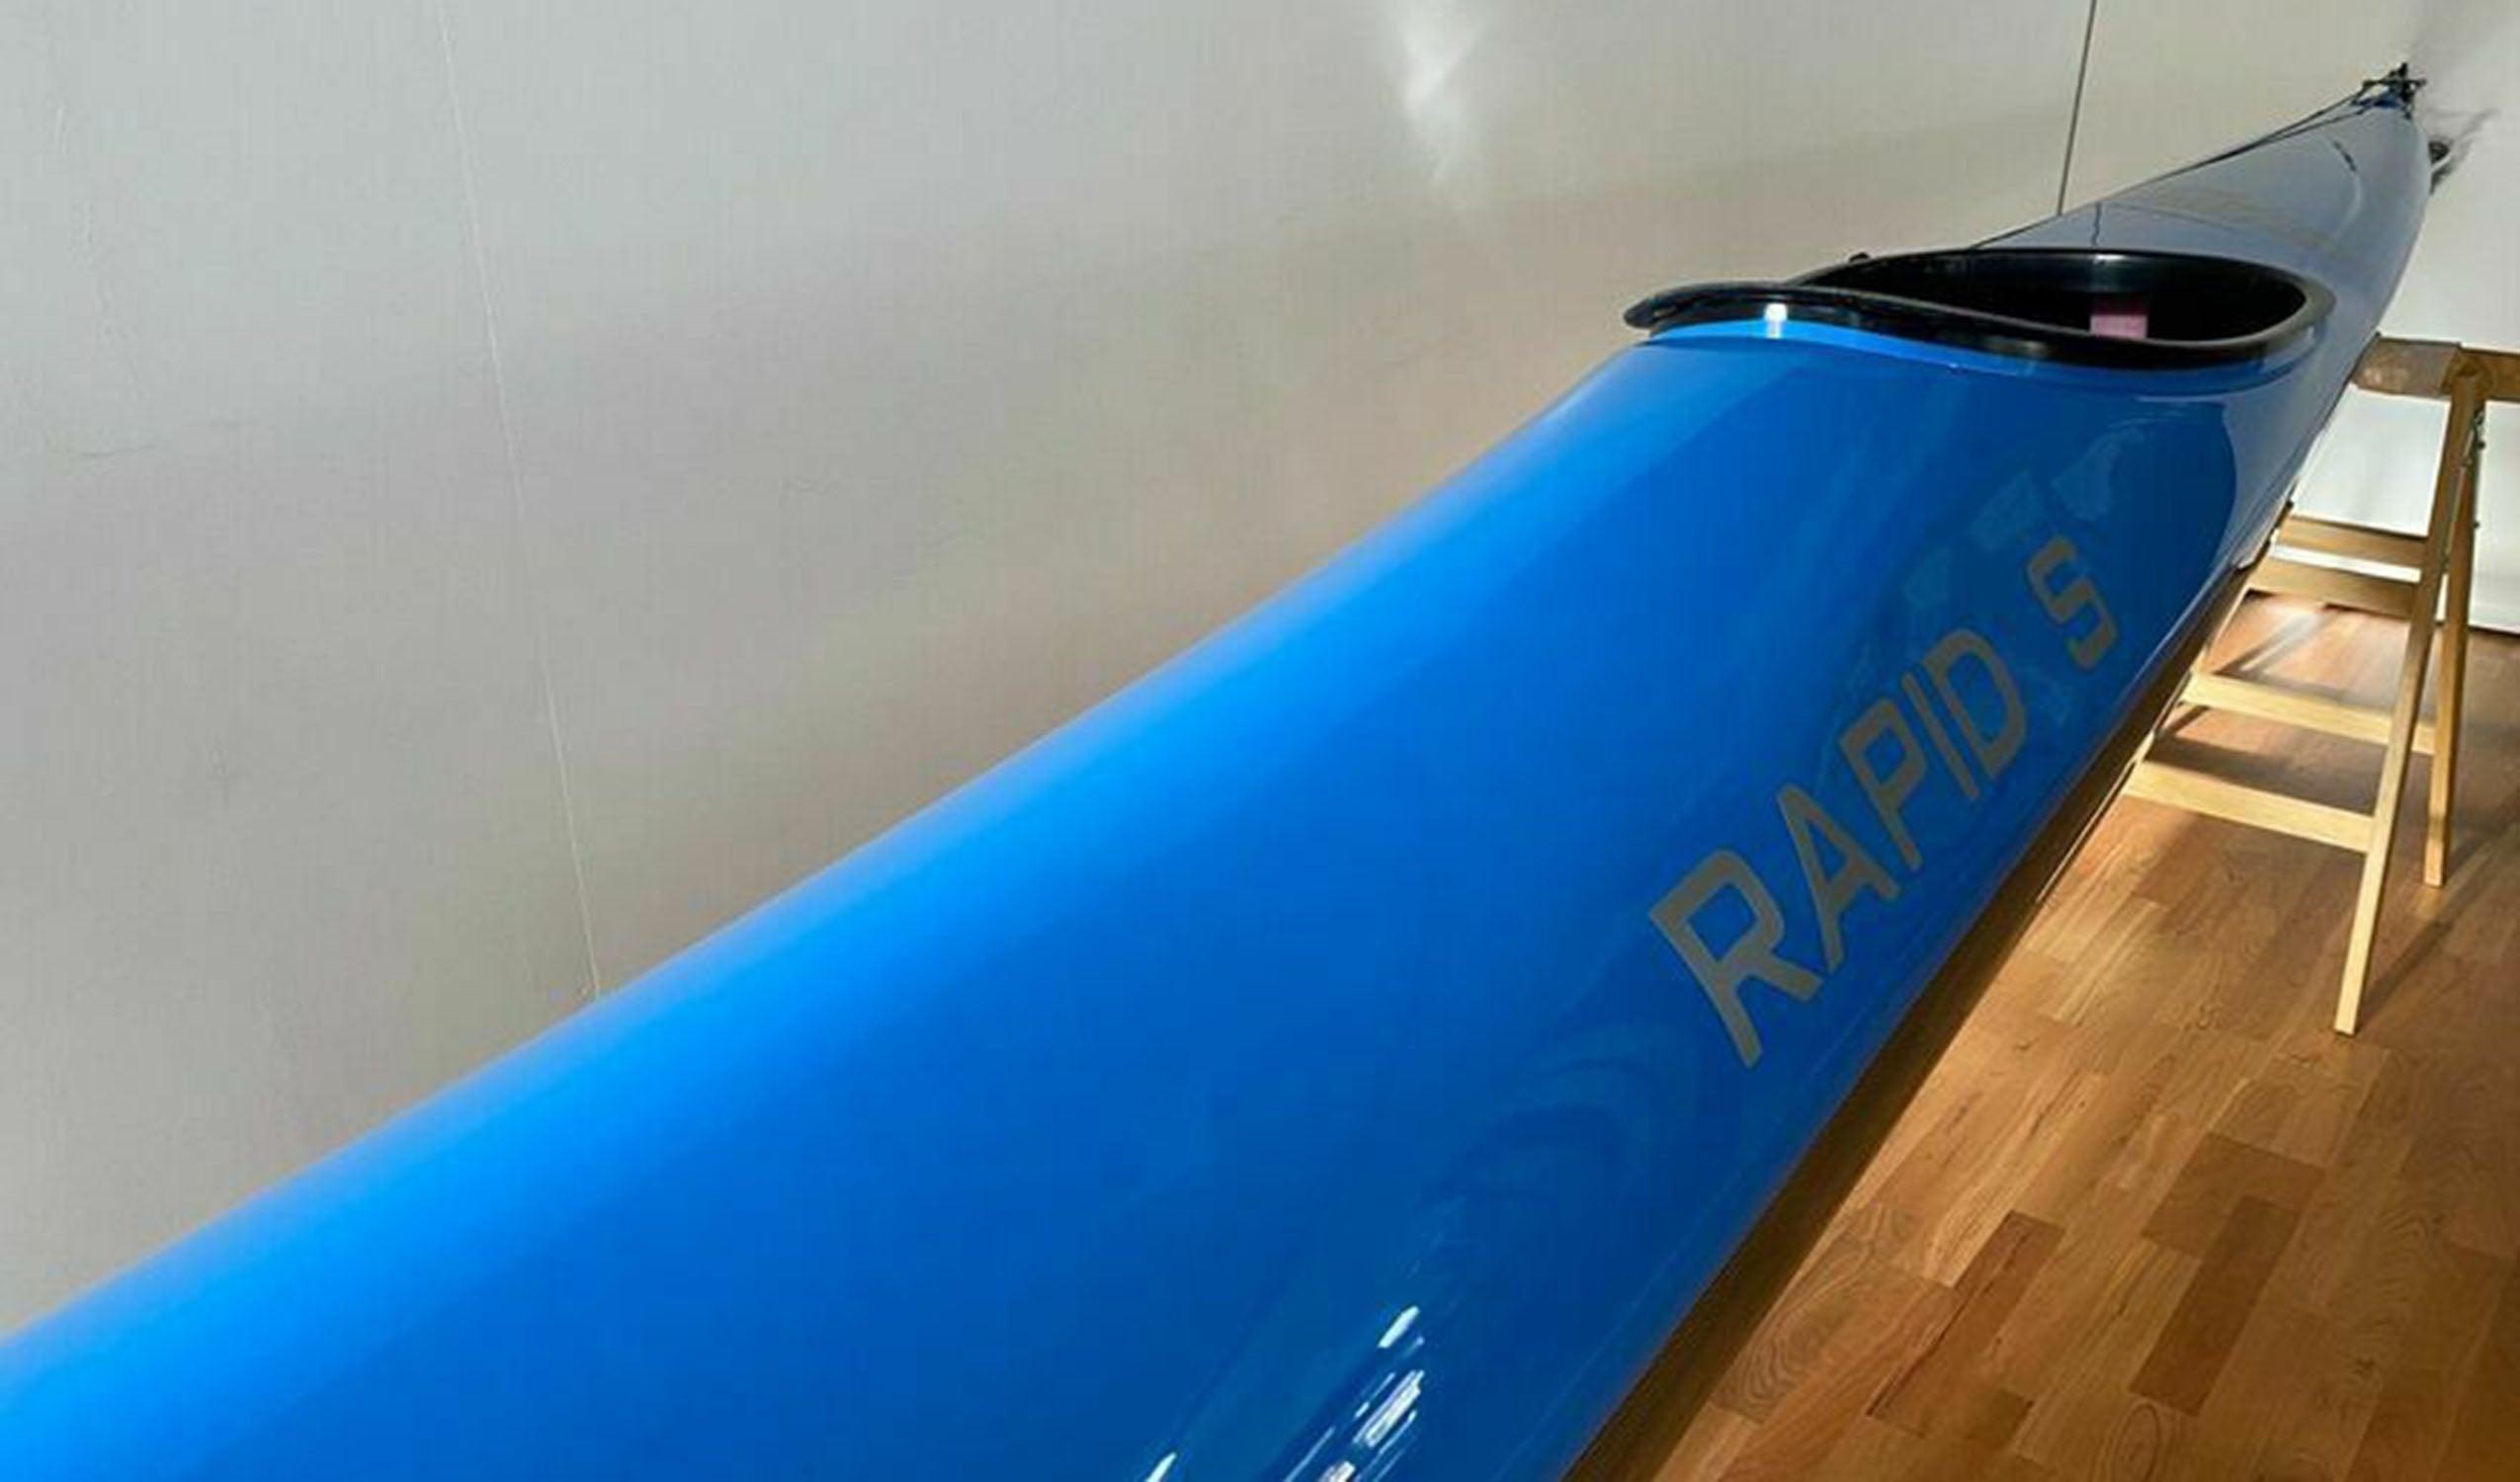 Produktbild von Kajak " Rapid S Multisport-blau " der Marke STELLAR Lightweight für 3290.00 €. Erhältlich online bei Lite Venture ( www.liteventure.de )